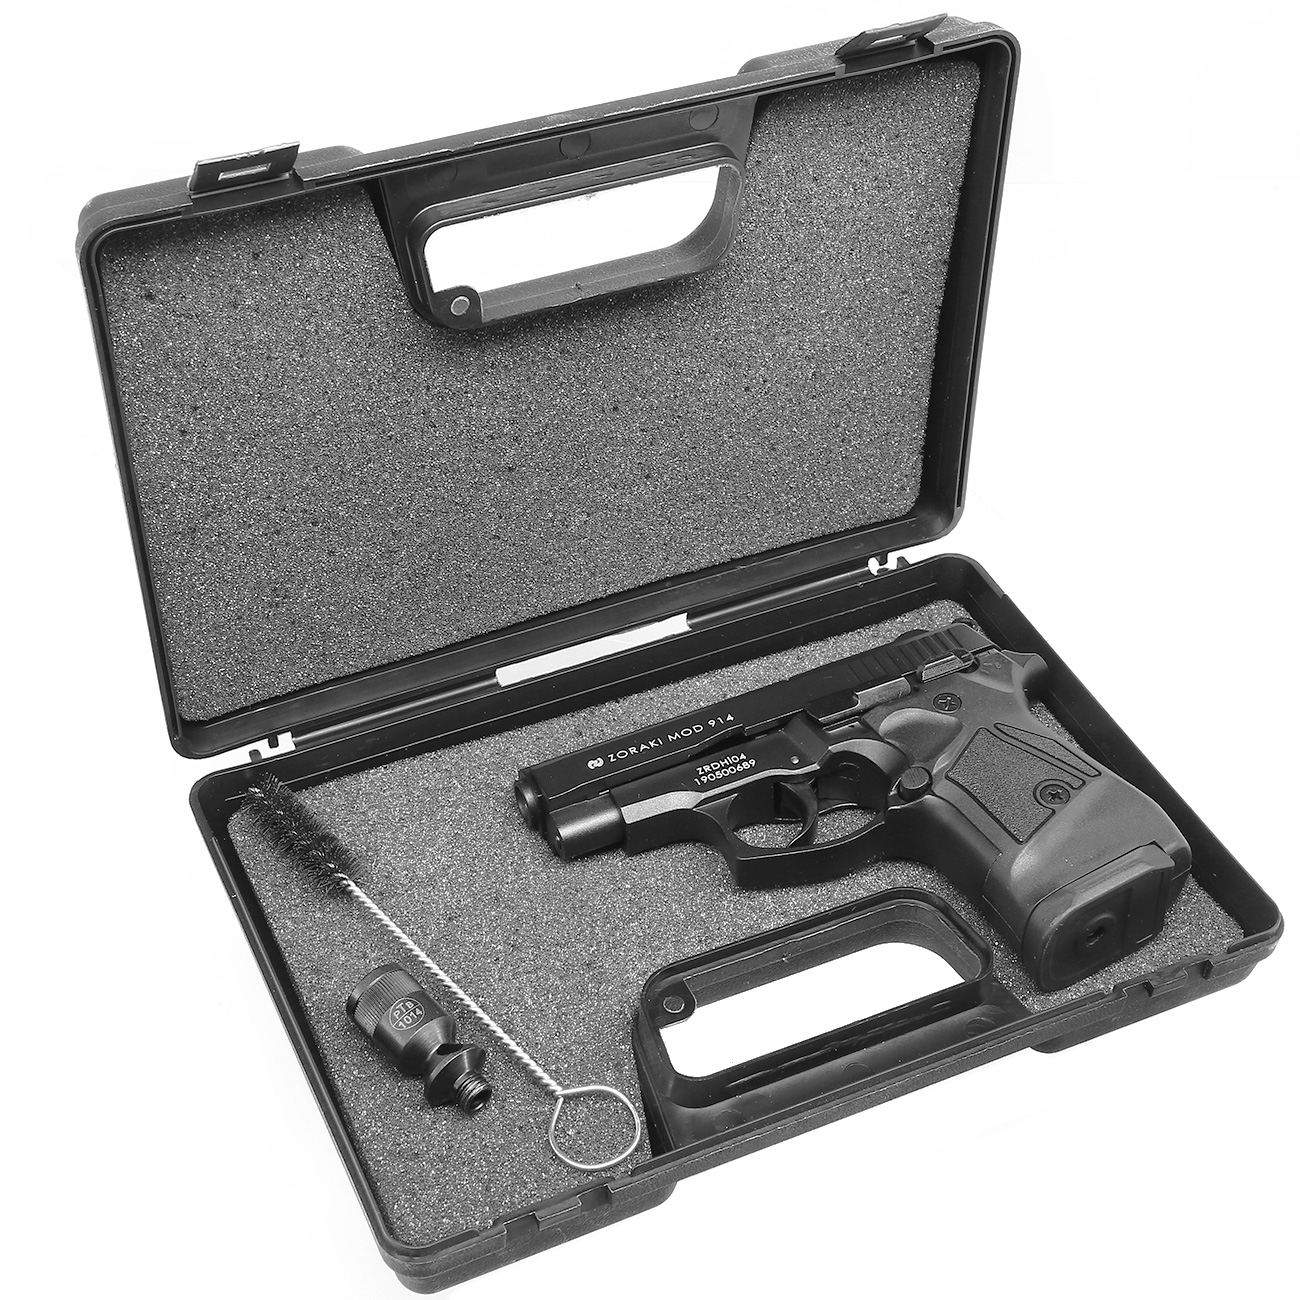 Zoraki 914 brüniert Schreckschuss Pistole 9mm P.A.K. Bild 1